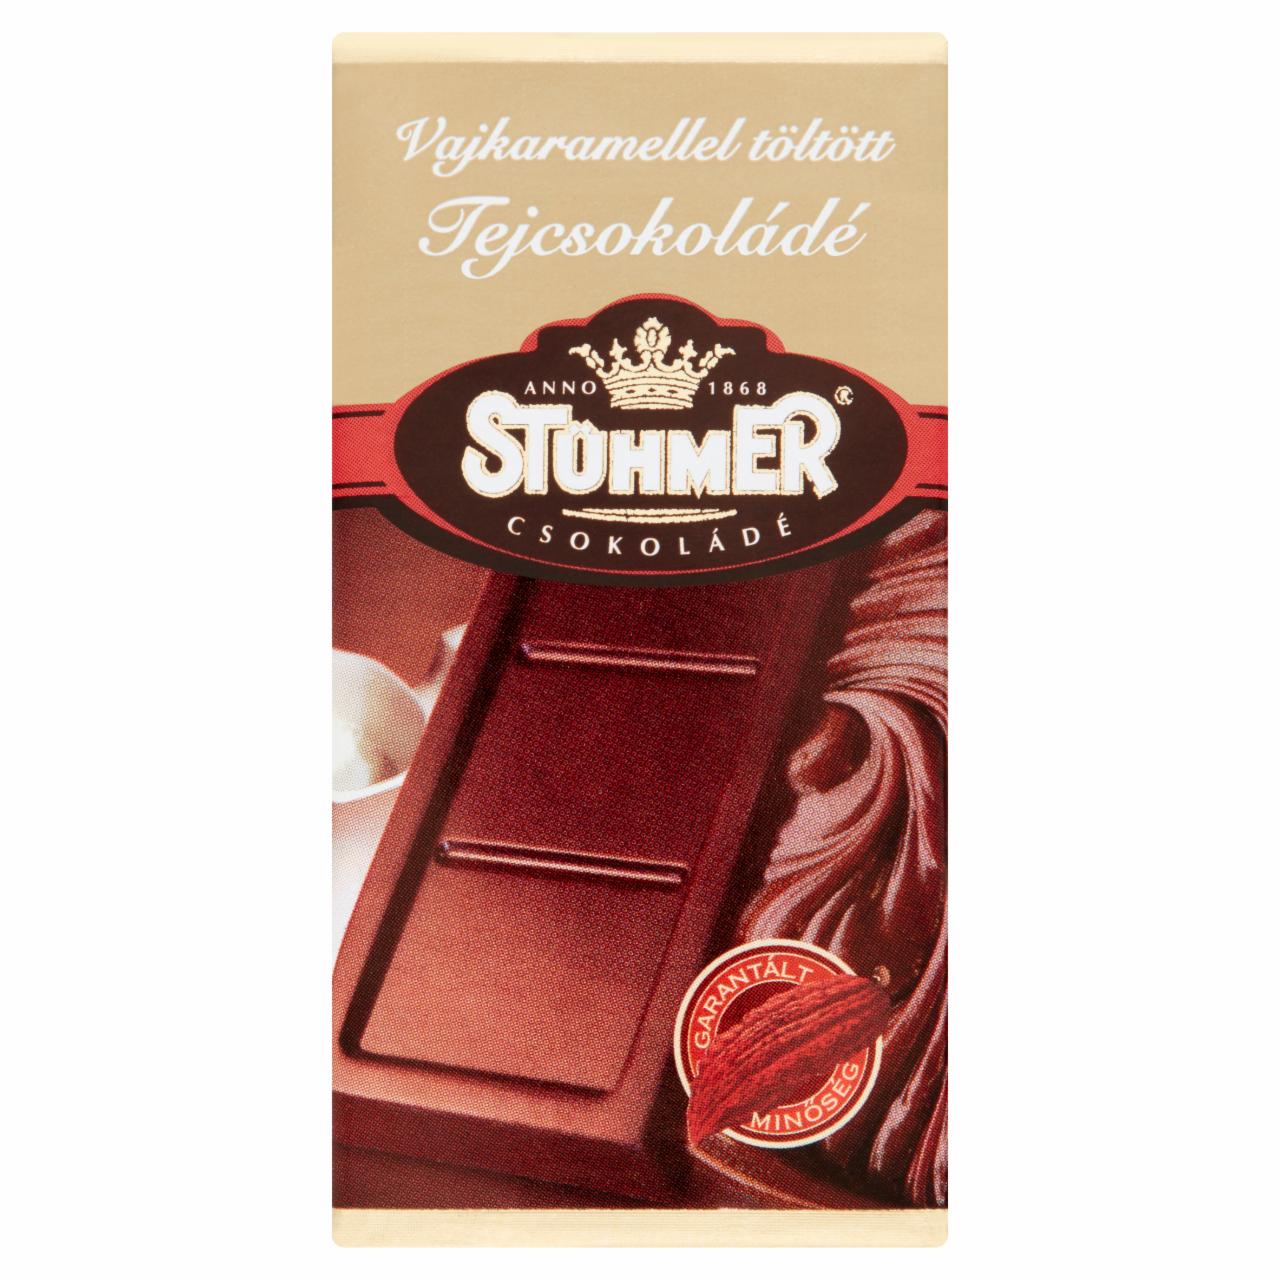 Képek - Stühmer vajkaramellel töltött tejcsokoládé 20 g